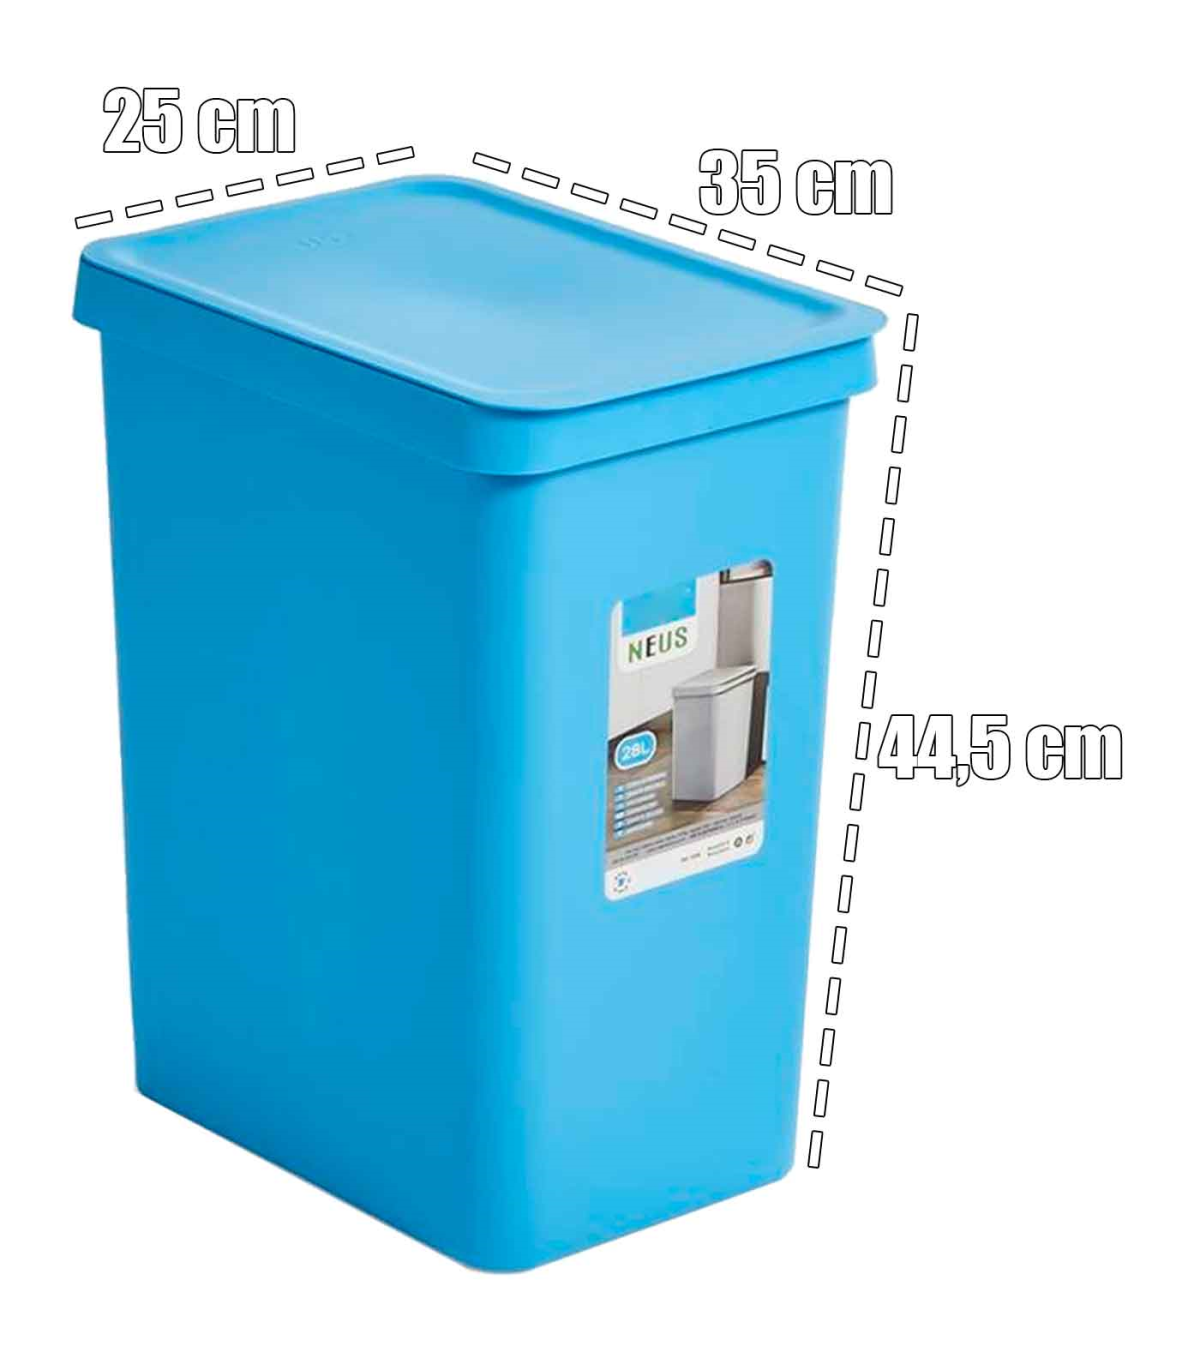 Cubo para la basura con tapa, color azul y varios tamaños - OFERTA